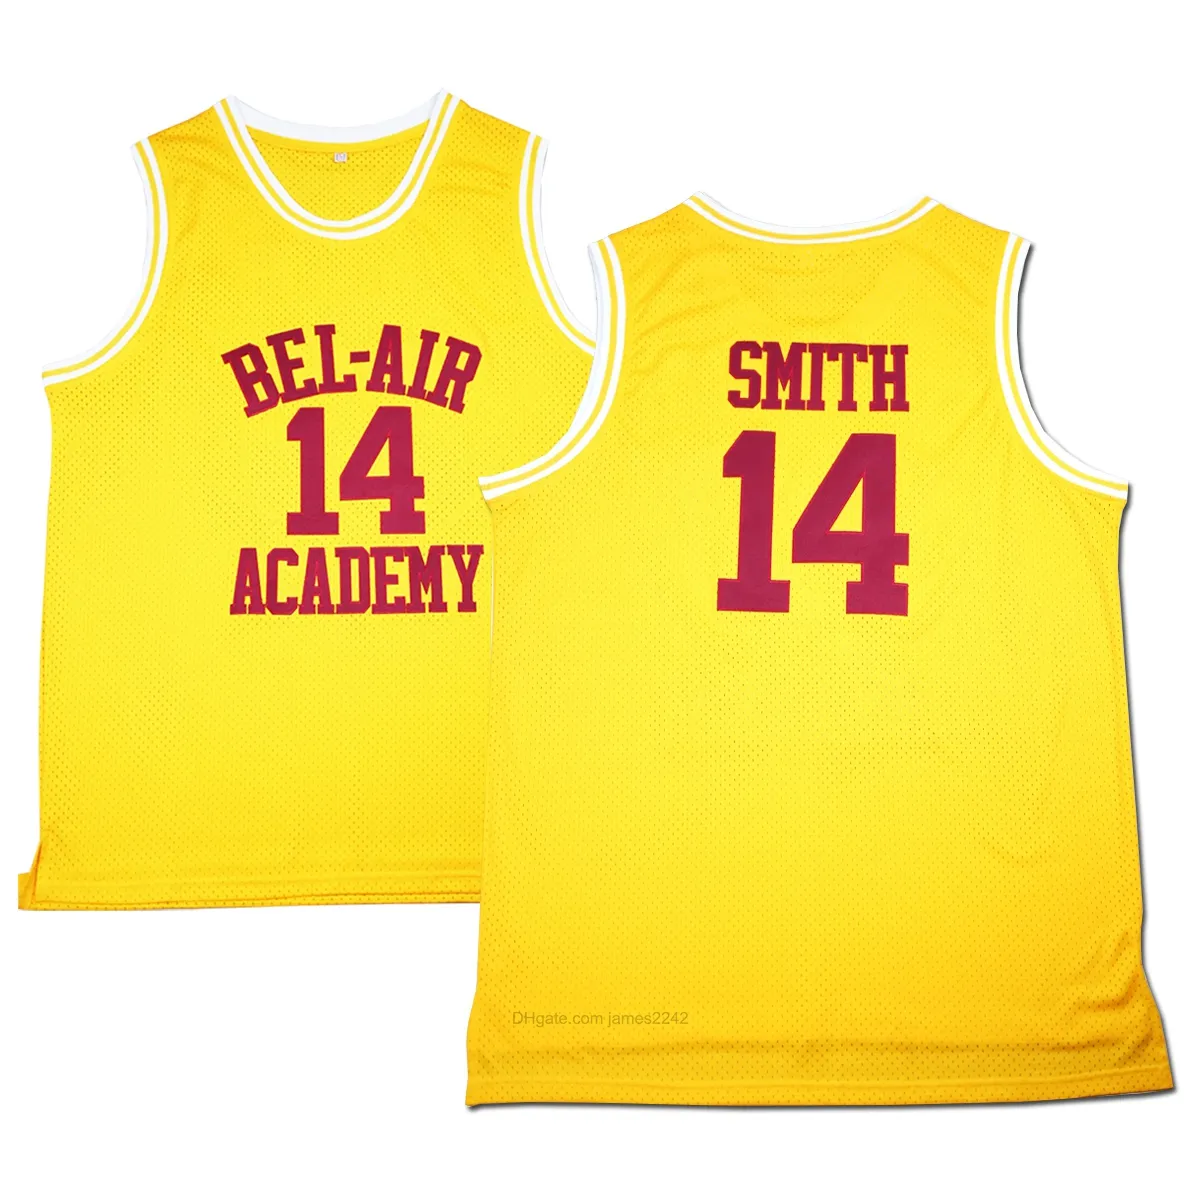 미국에서 배송 # 모비 남자 농구 유니폼 벨 - 에어의 신선한 왕자는 스미스 저지 노란색 스티치 아카데미 크기 S-3XL